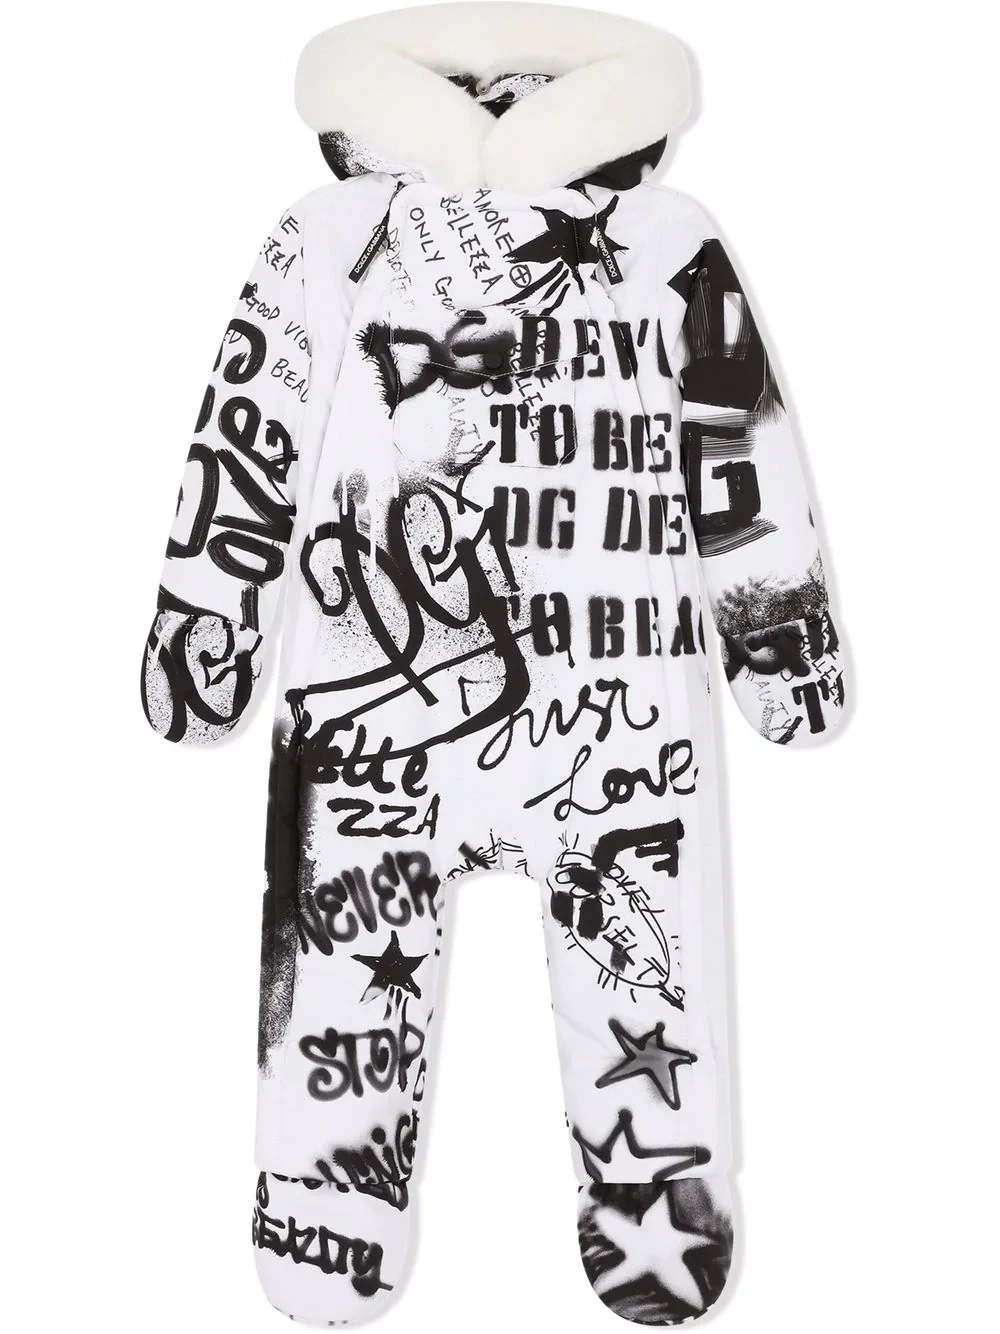 Combinaison de neige matelassée Dolce & Gabbana blanche et noire à imprimé graffiti